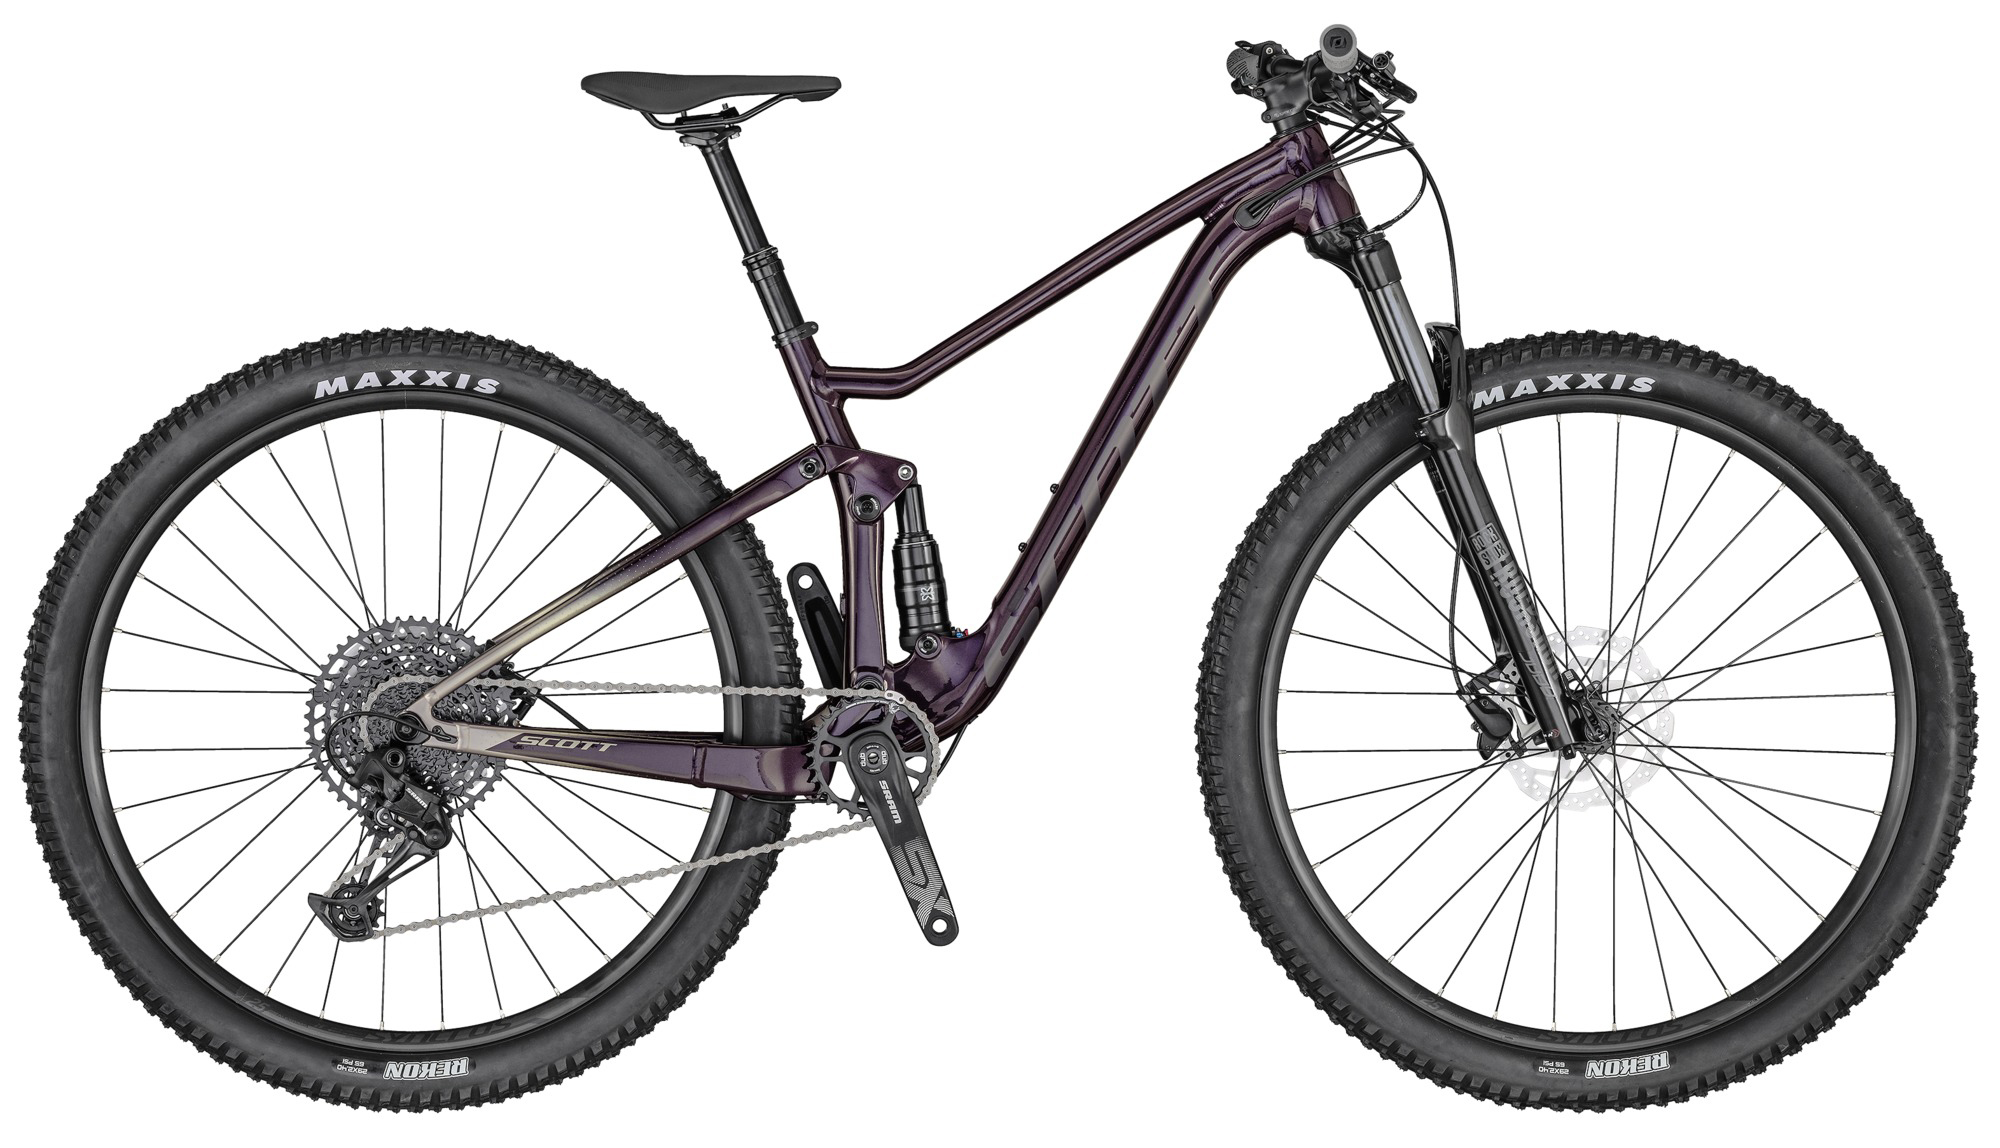  Отзывы о Двухподвесном велосипеде Scott Contessa Spark 930 2020